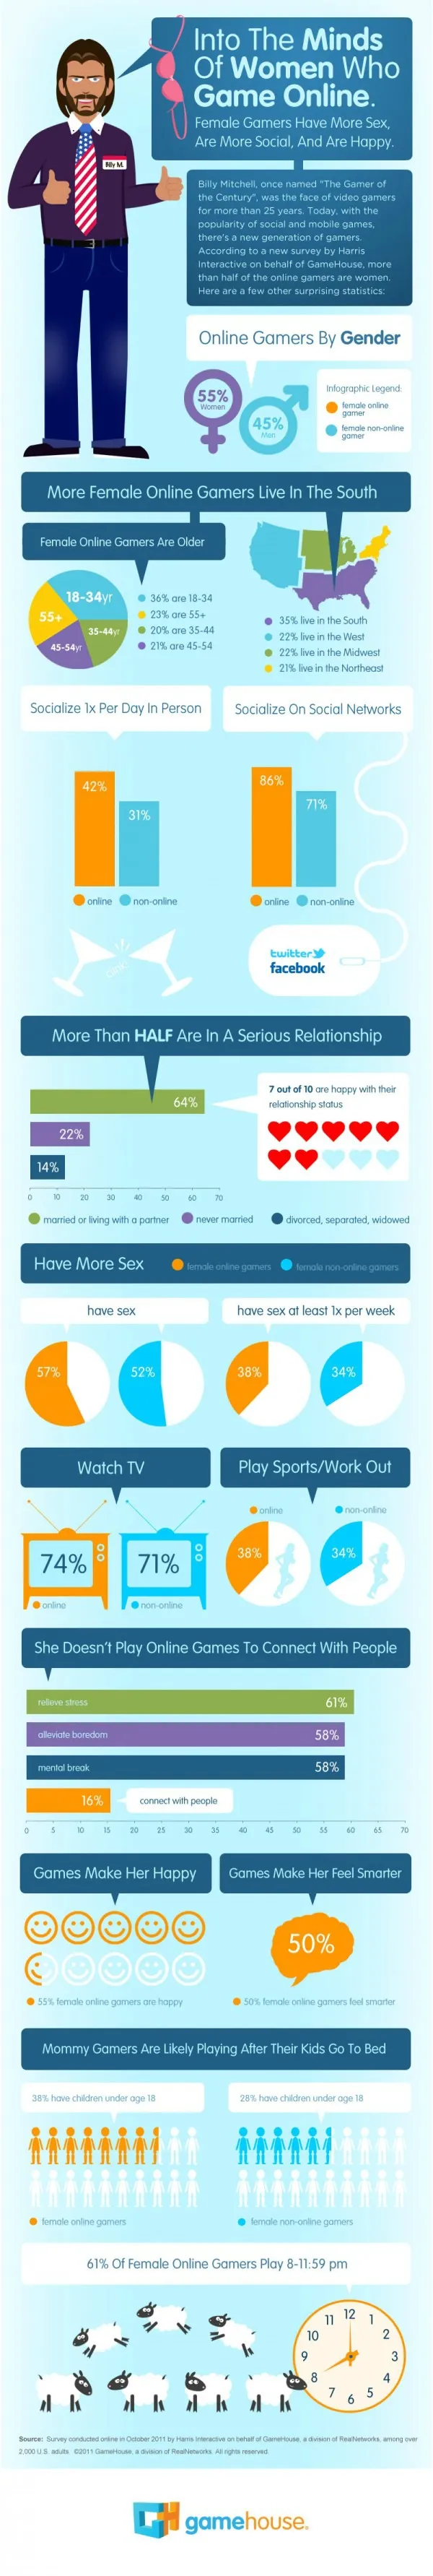 Οι γυναίκες gamers κάνουν περισσότερο σεξ! (infographic)